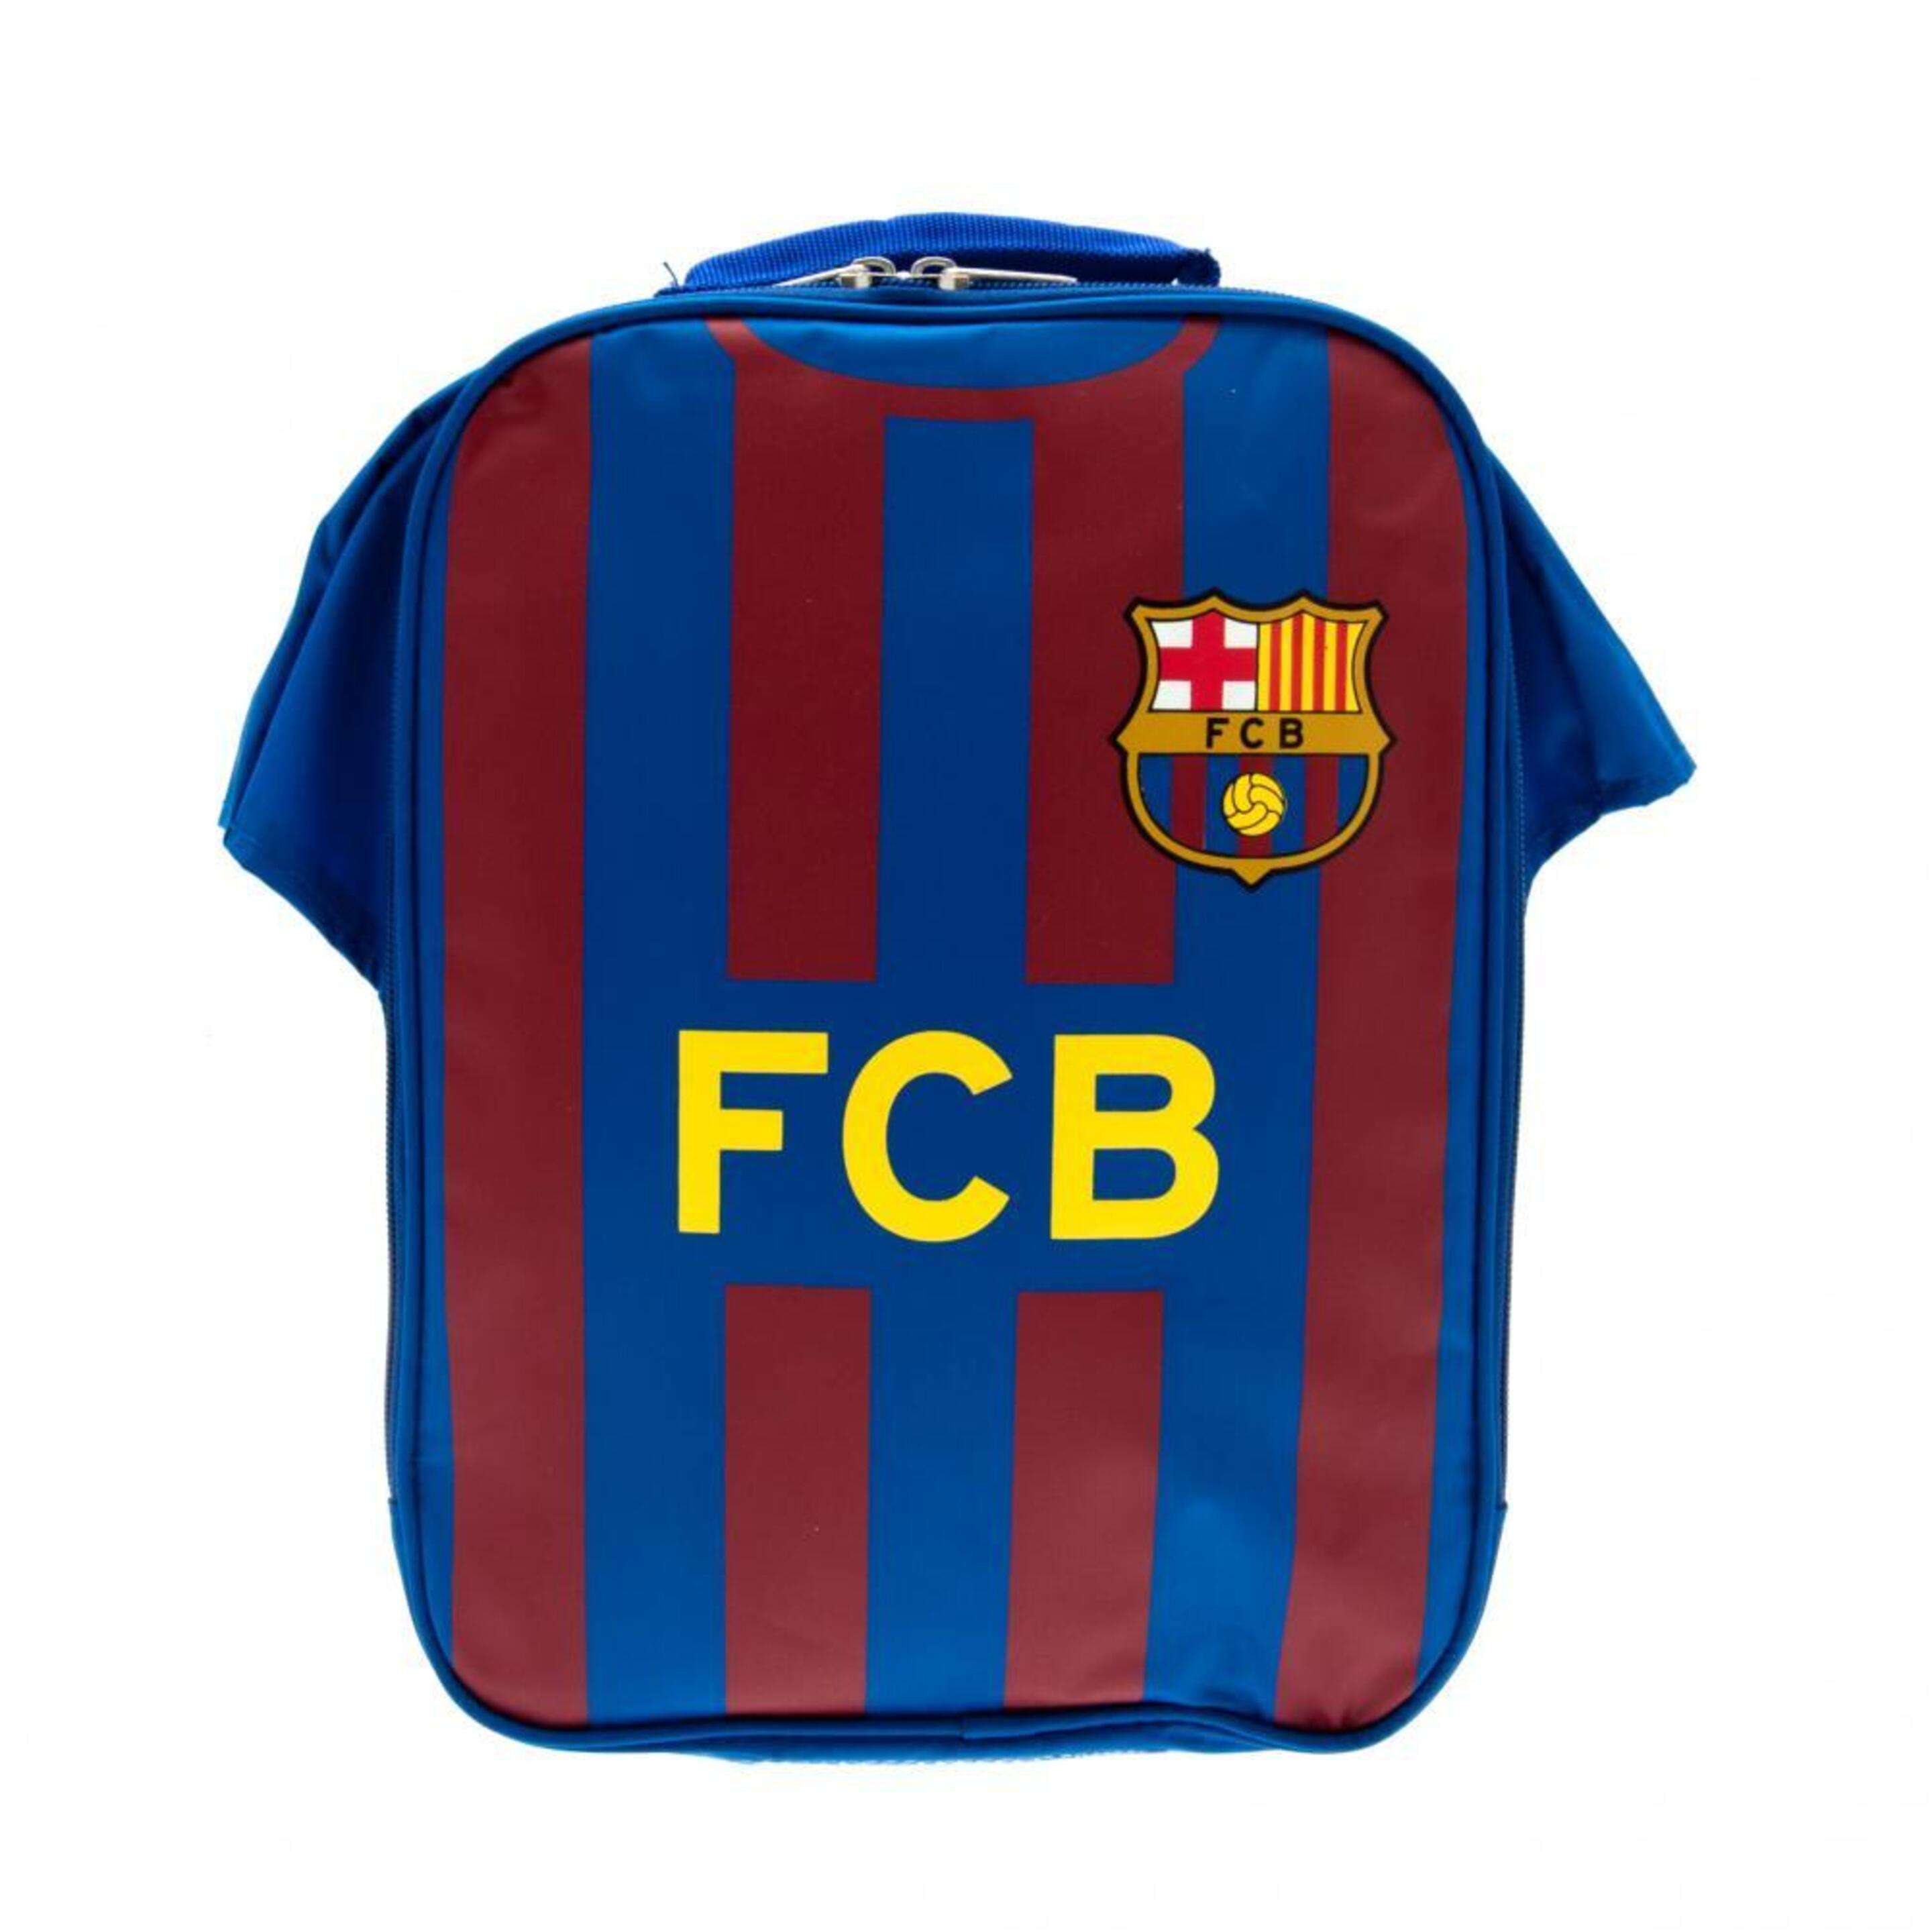 Fiambrera Fc Barcelona - azul - 